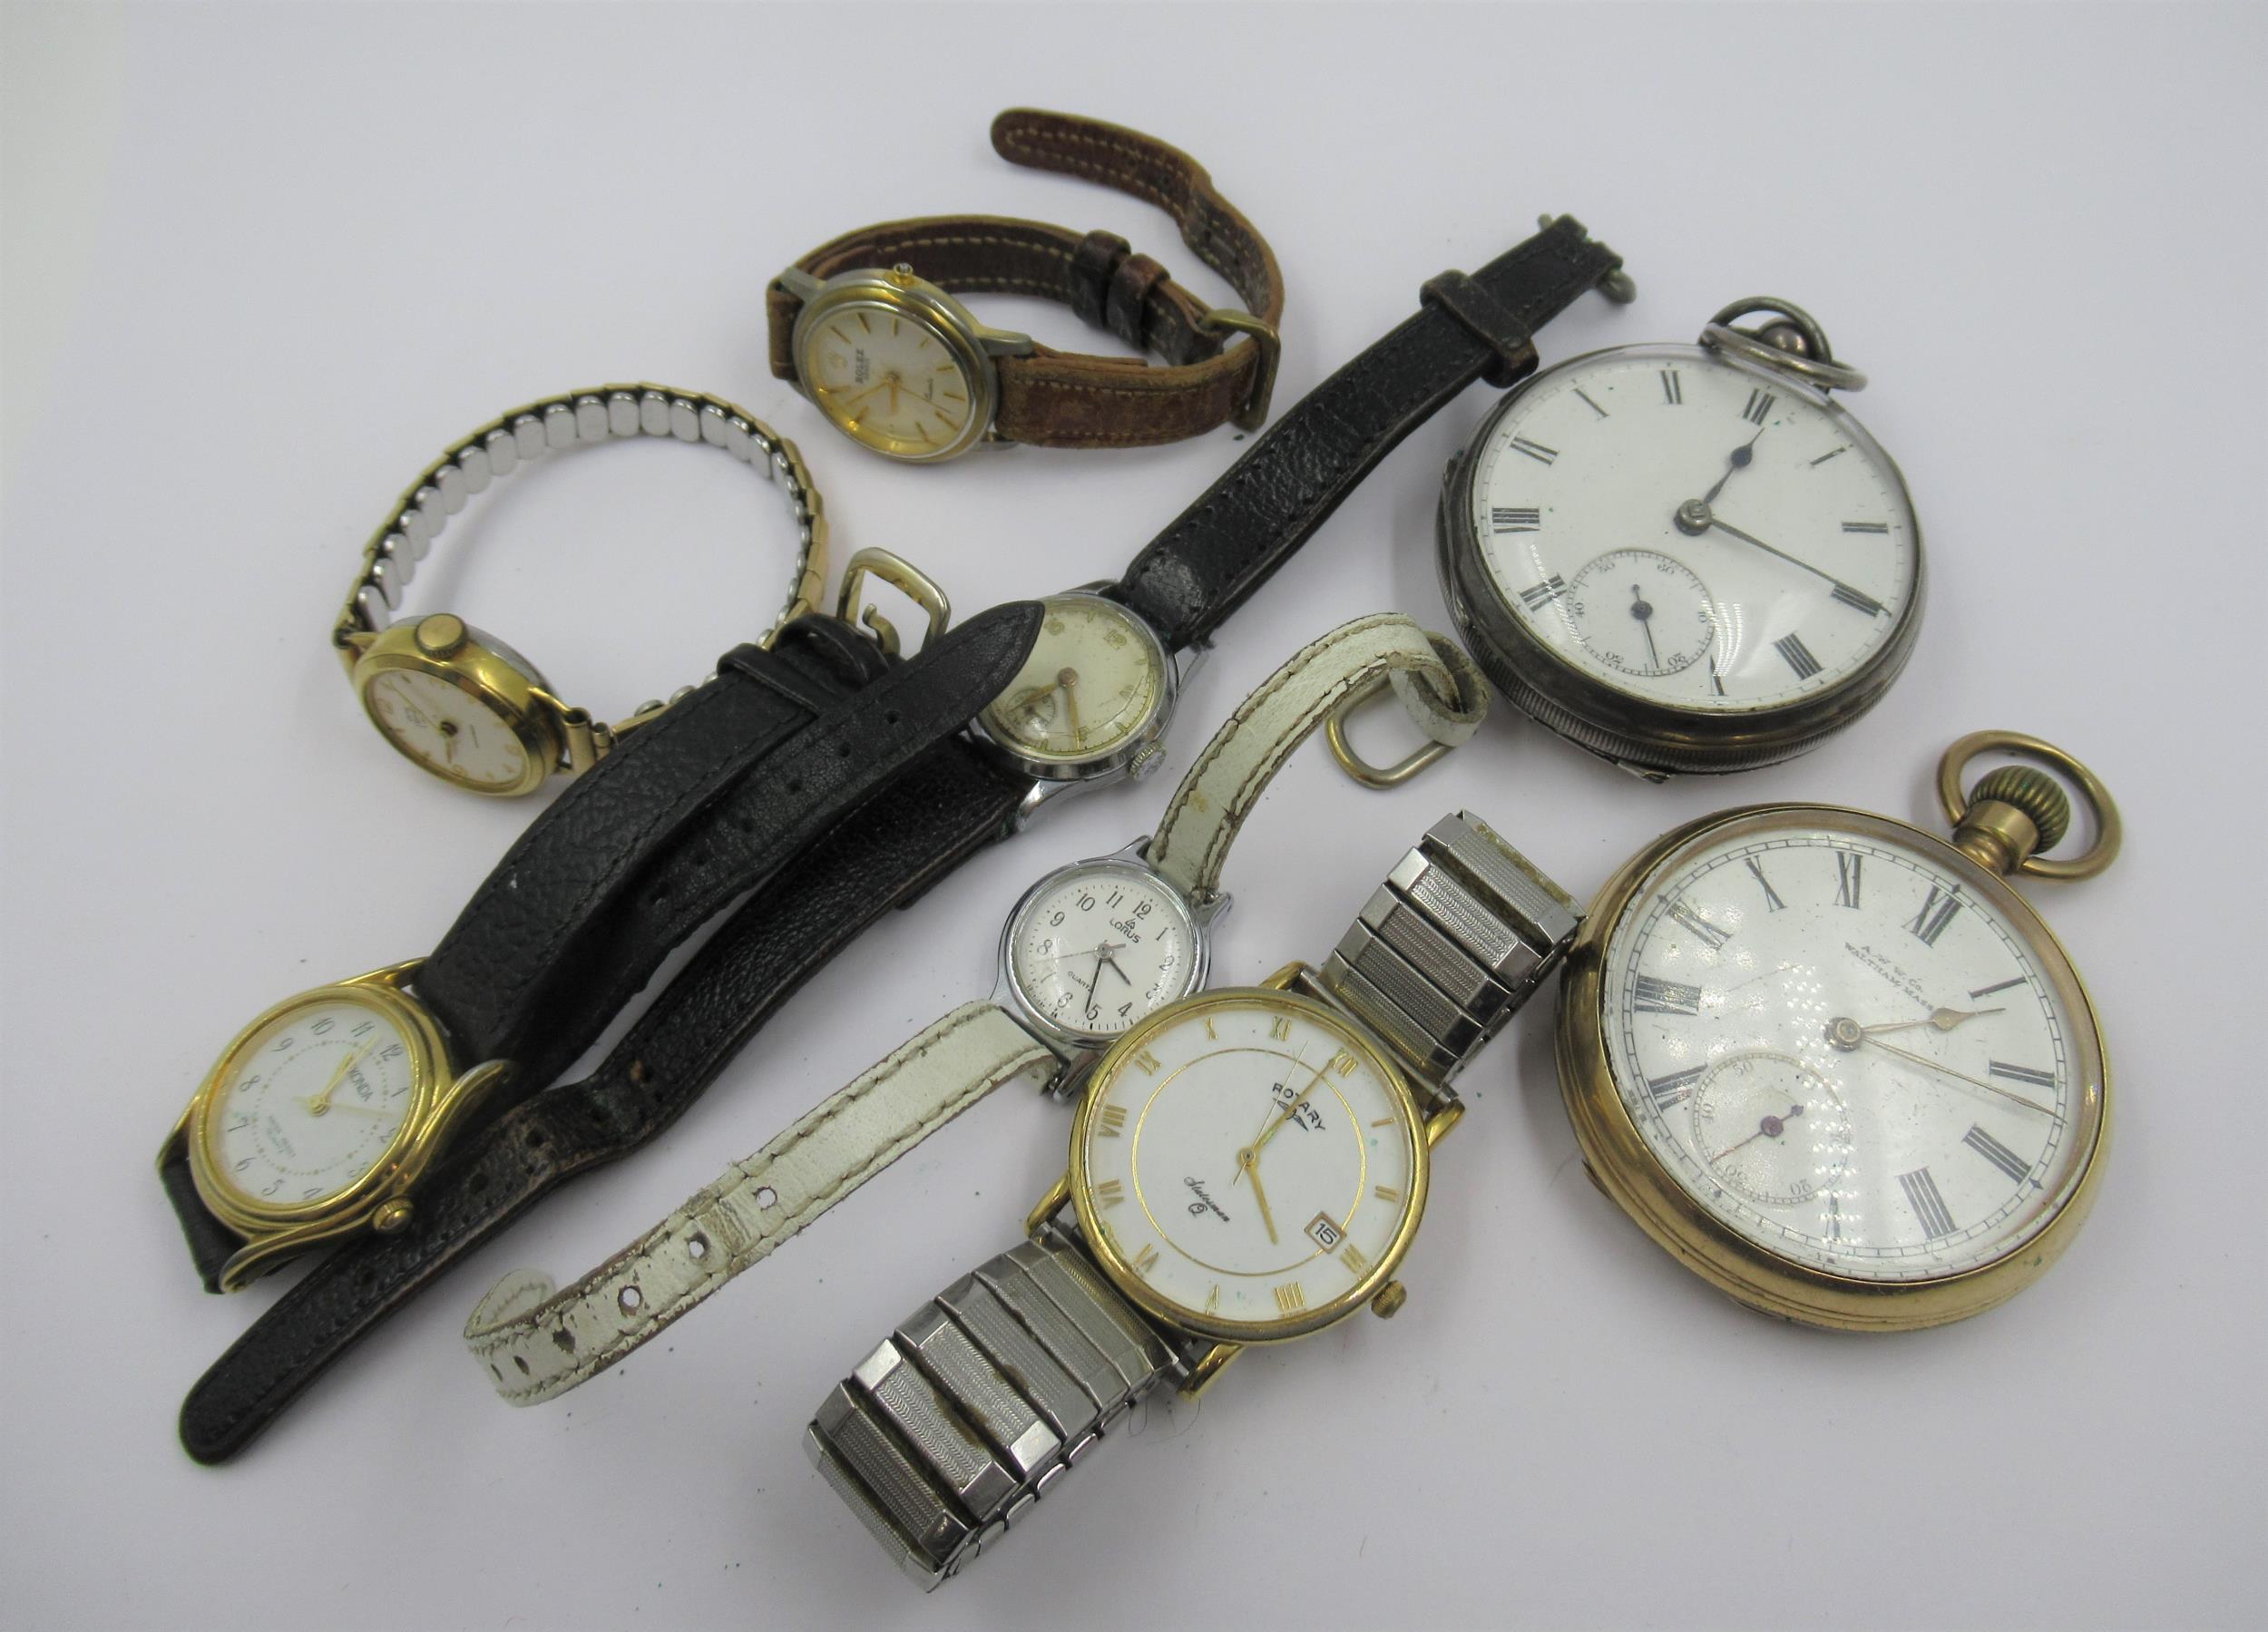 Silver cased open face keywind pocket watch, gold plated open face pocket watch with keyless